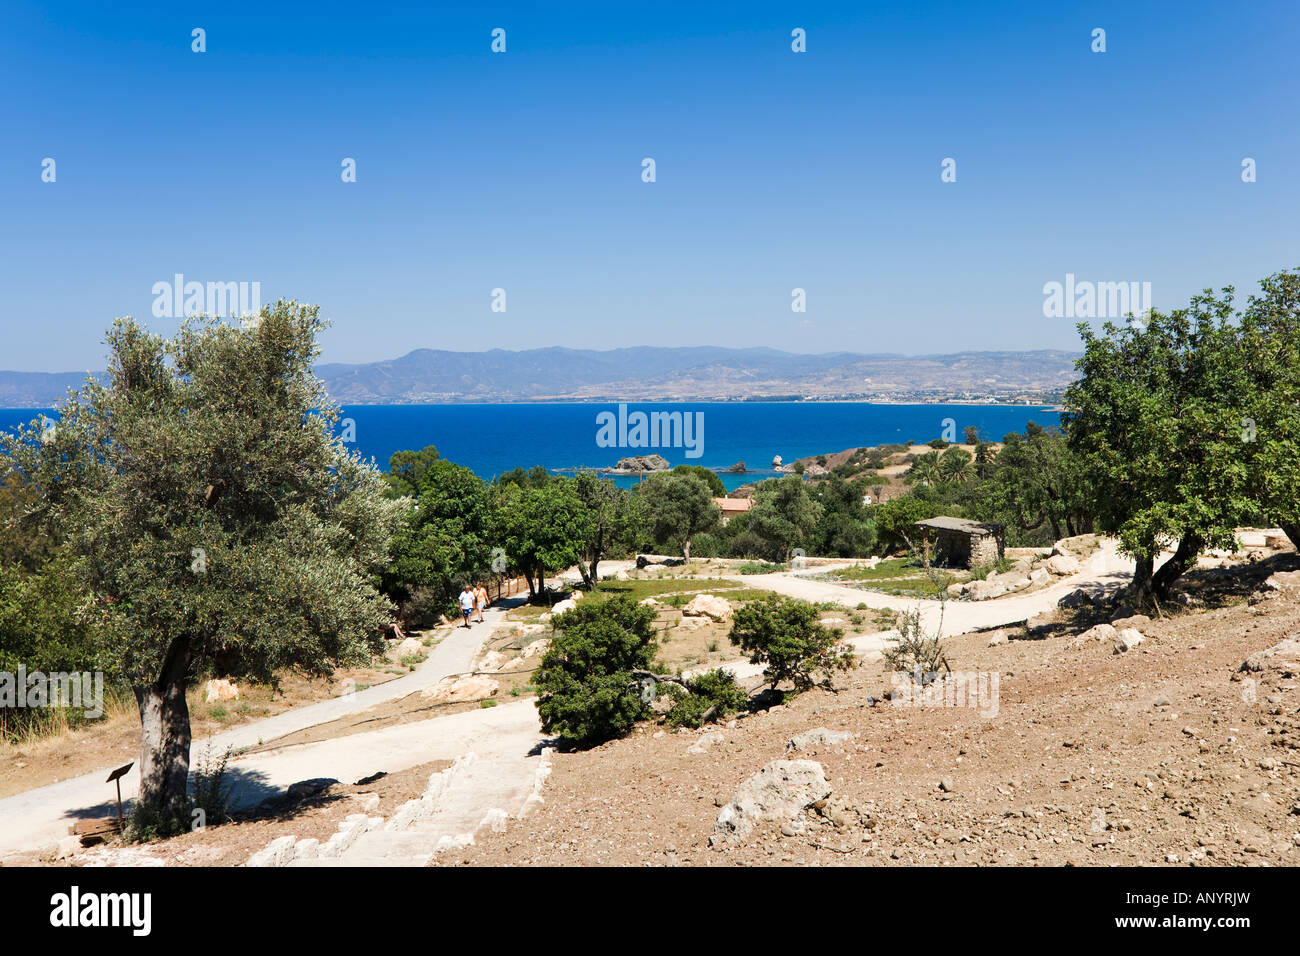 Vista desde el camino a los baños de Afrodita, Península de Akamas, cerca de Polis, Chipre Foto de stock